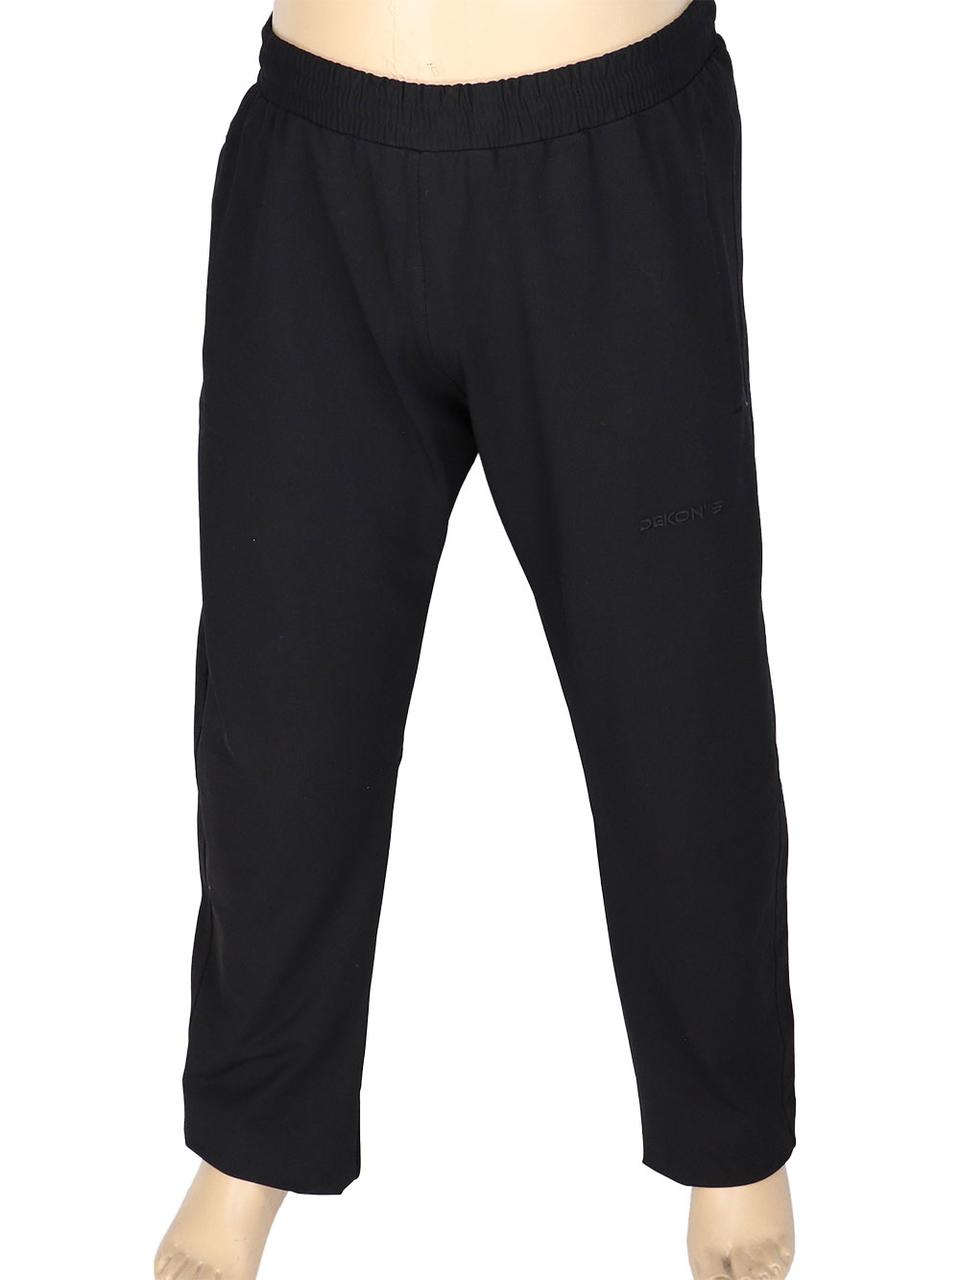 Чоловічі спортивні брюки Dekons 1071 B чорного кольору великих розмірів